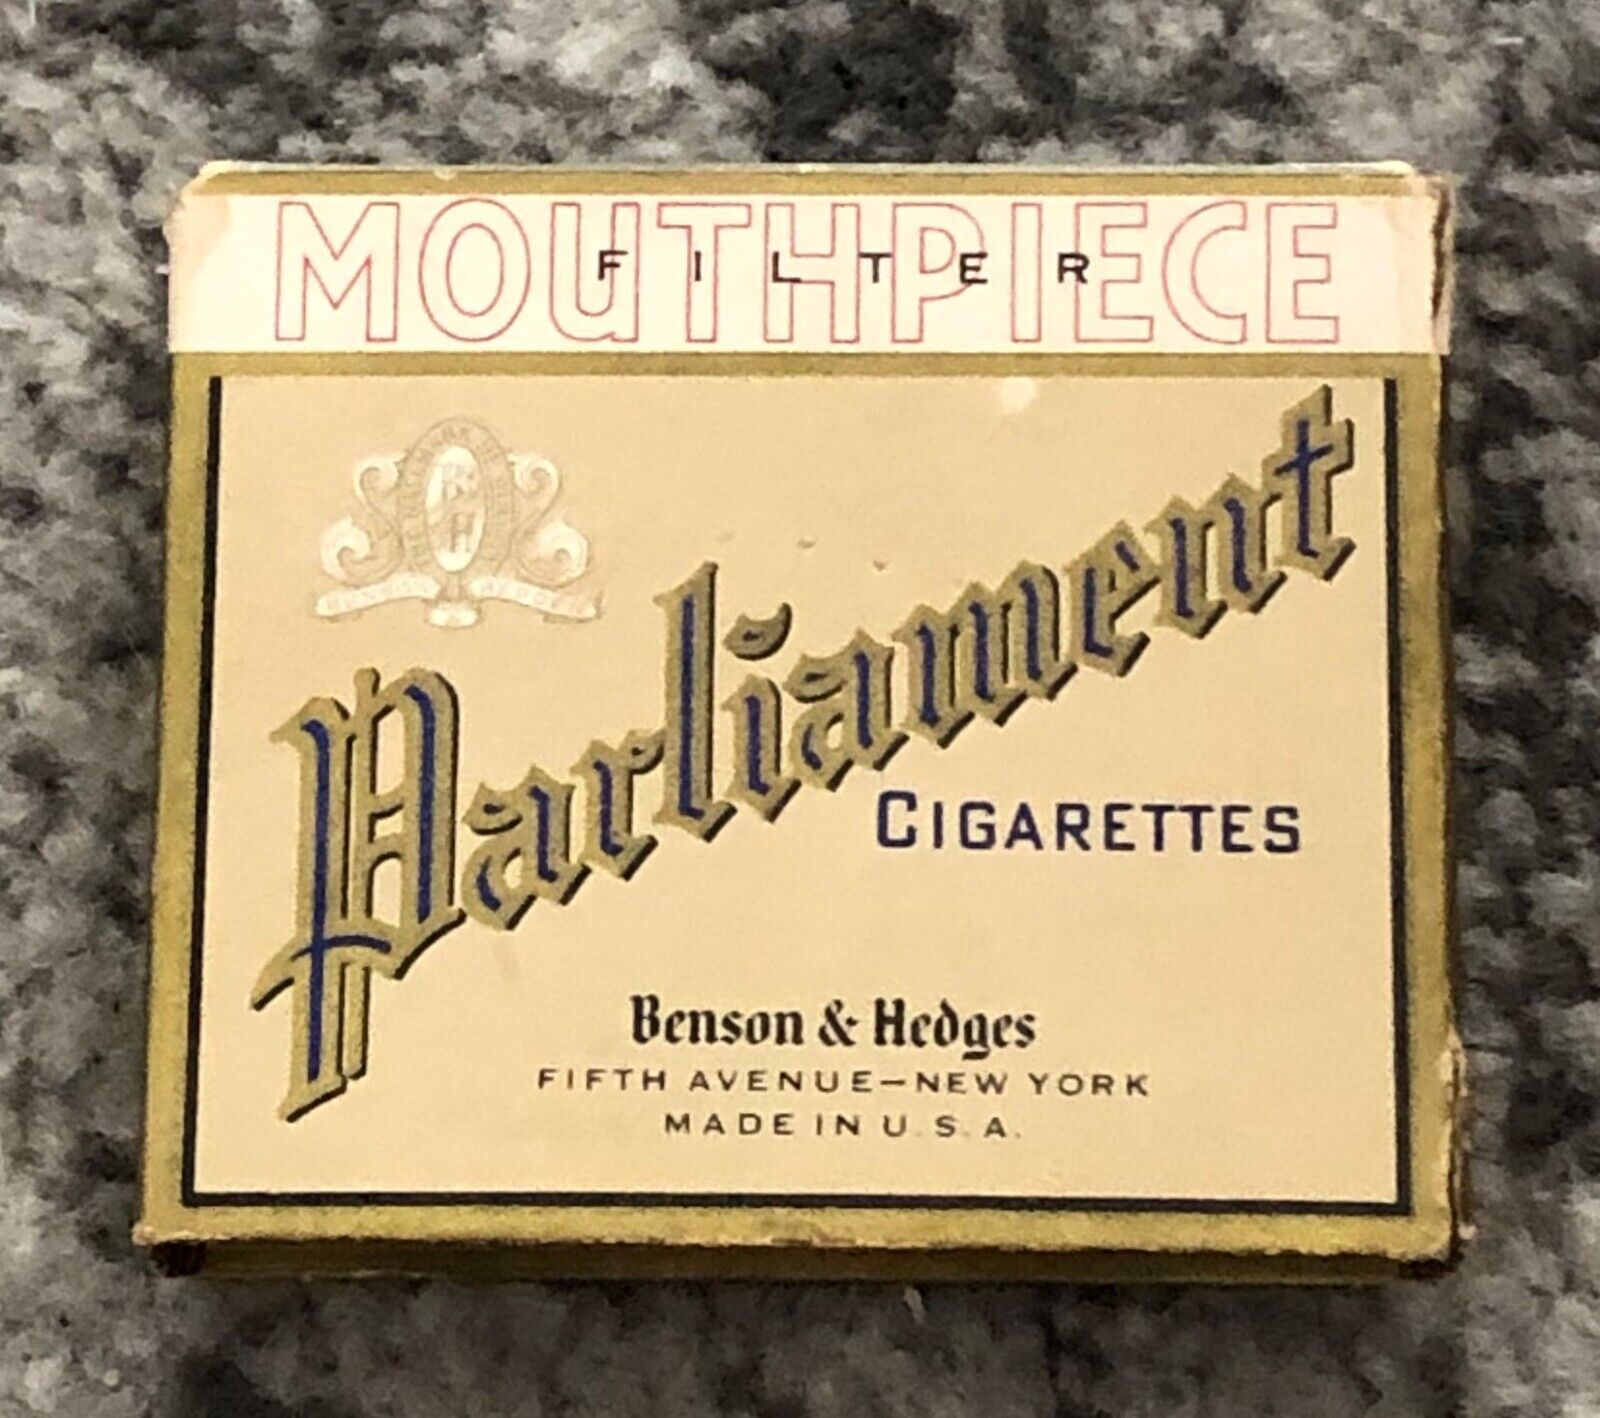 Parliament Cigarettes Box Empty Vintage Benson Hedges 1940s Tax Stamp Cigarette